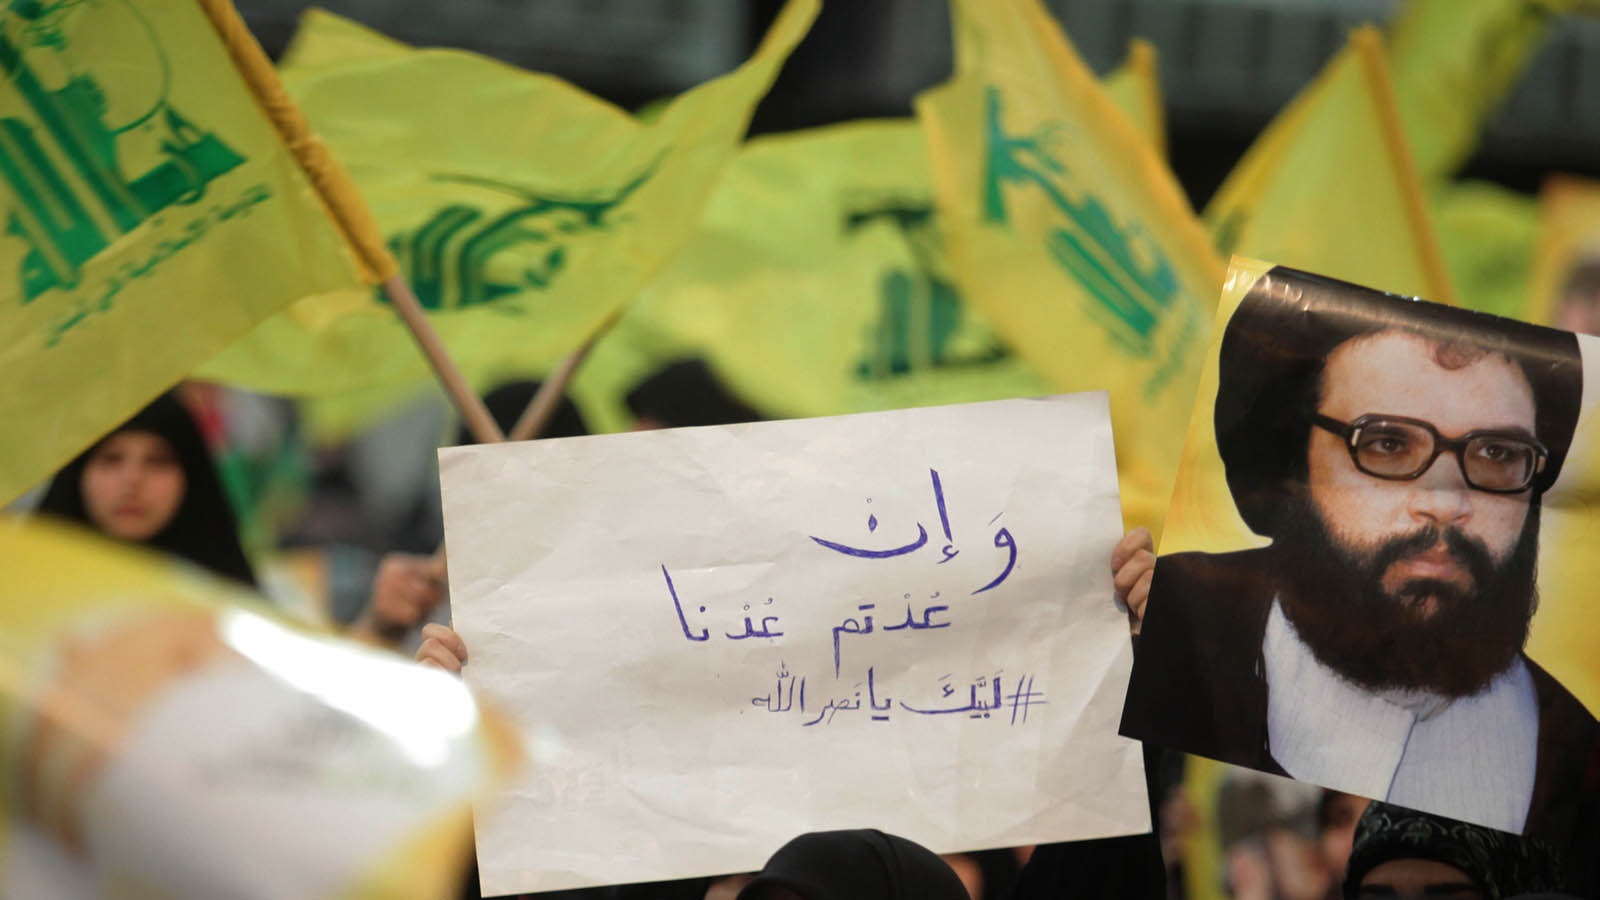 عملية شبعا: حسابات حزب الله ورسائل "الرد المضبوط"